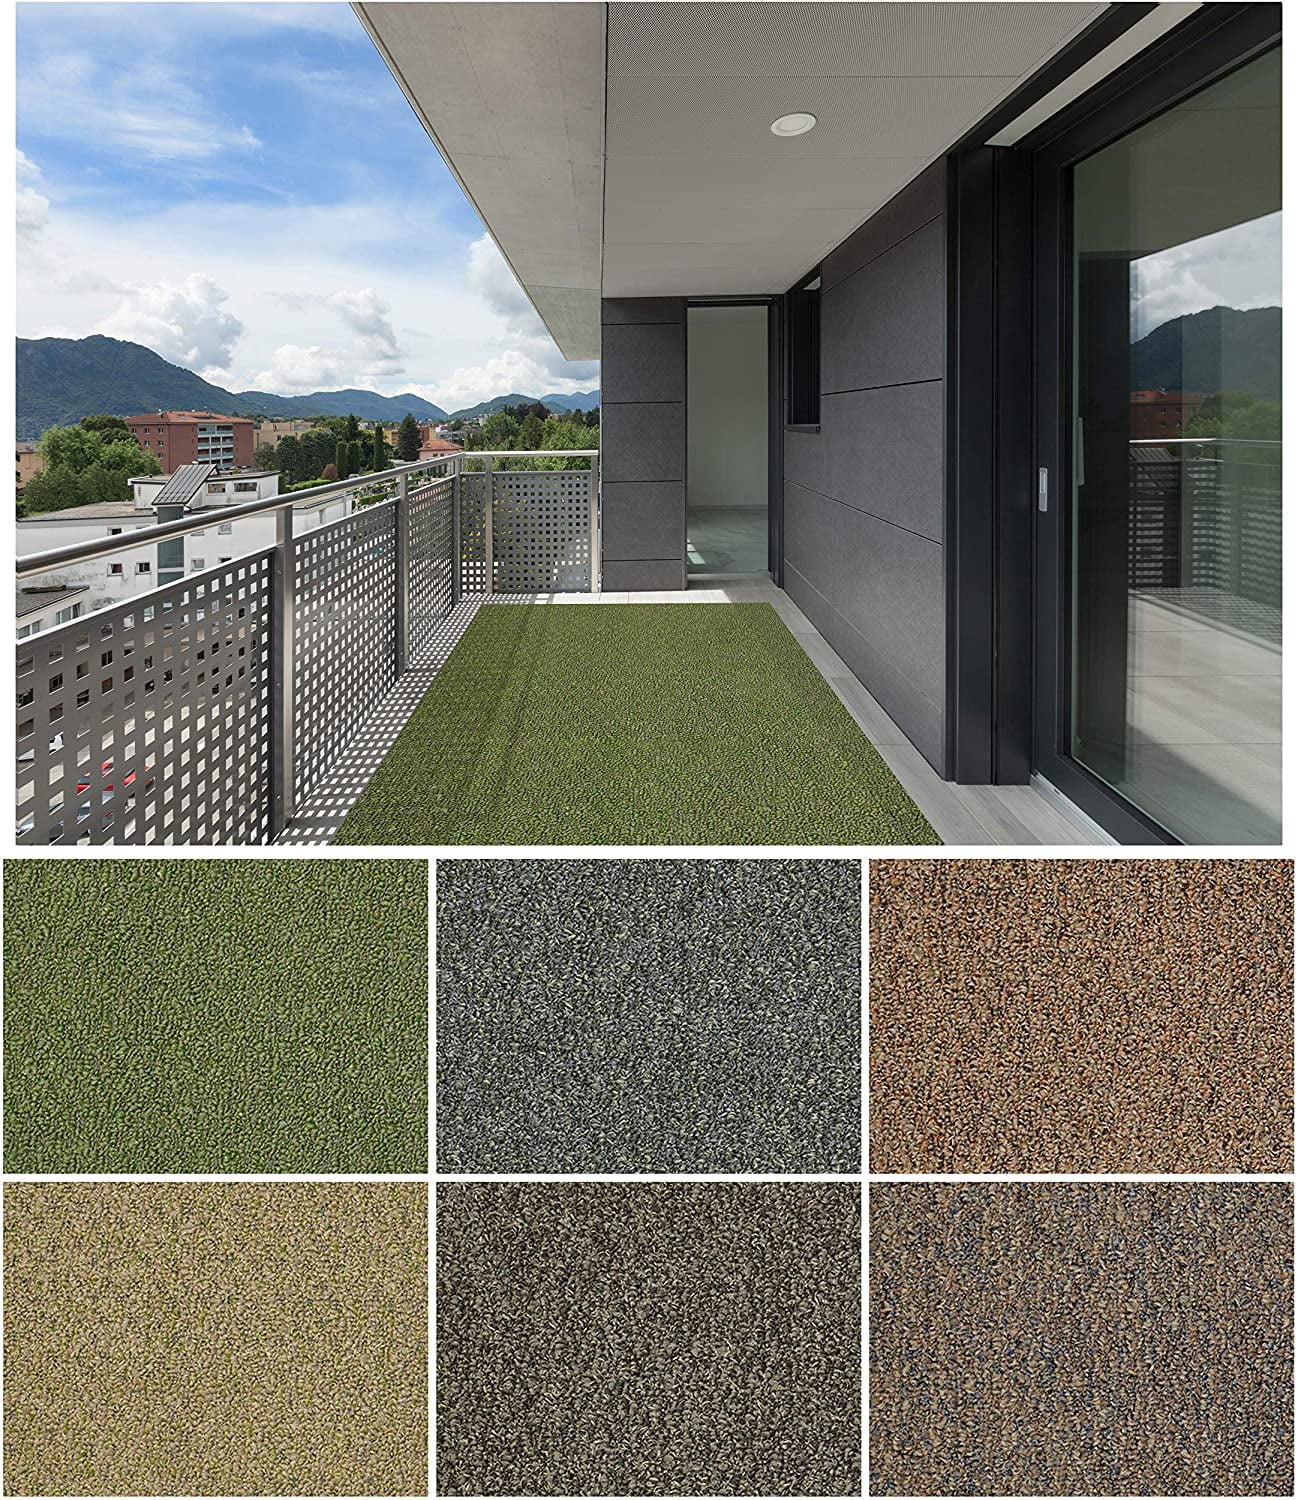 Koeckritz Rugs 7' x 7' Charcoal Indoor Outdoor Level Loop Area Rug Carpet 